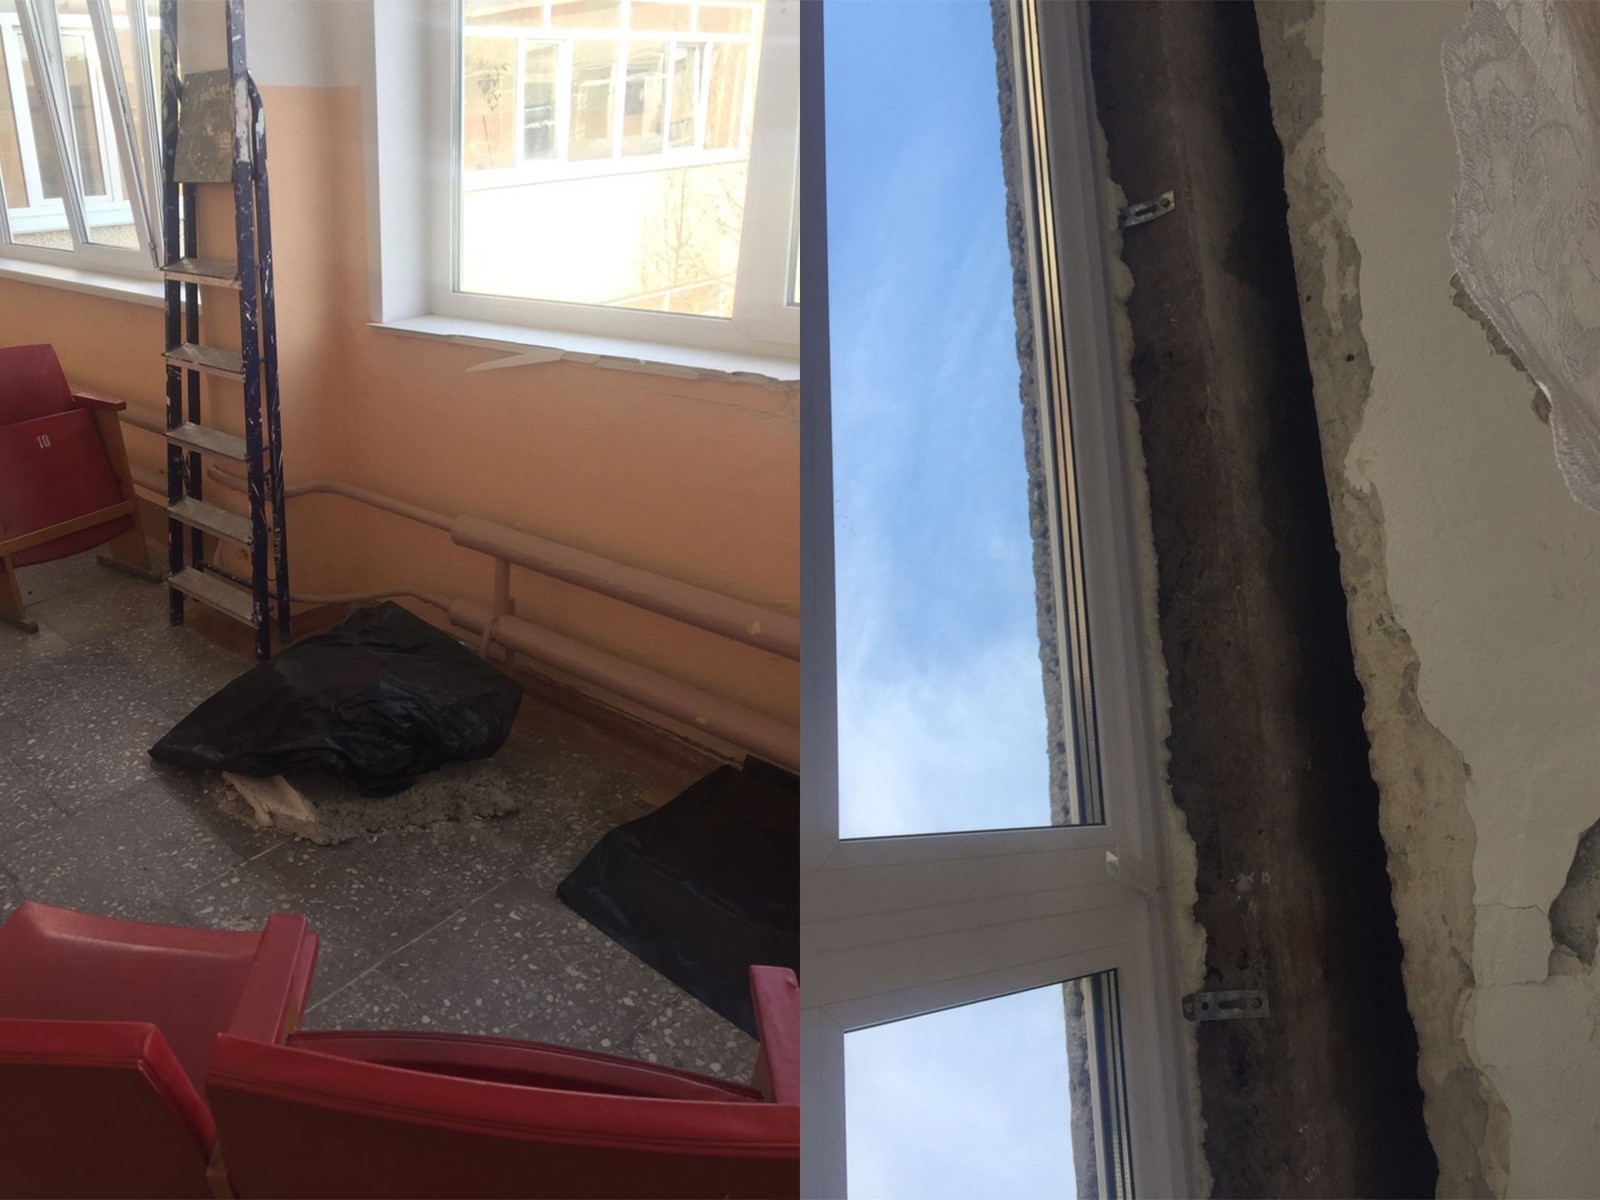 Школа 15 каменск. Перекрытие окна. Обрушение потолка. В школе обвалился потолок. Обвал перекрытия.